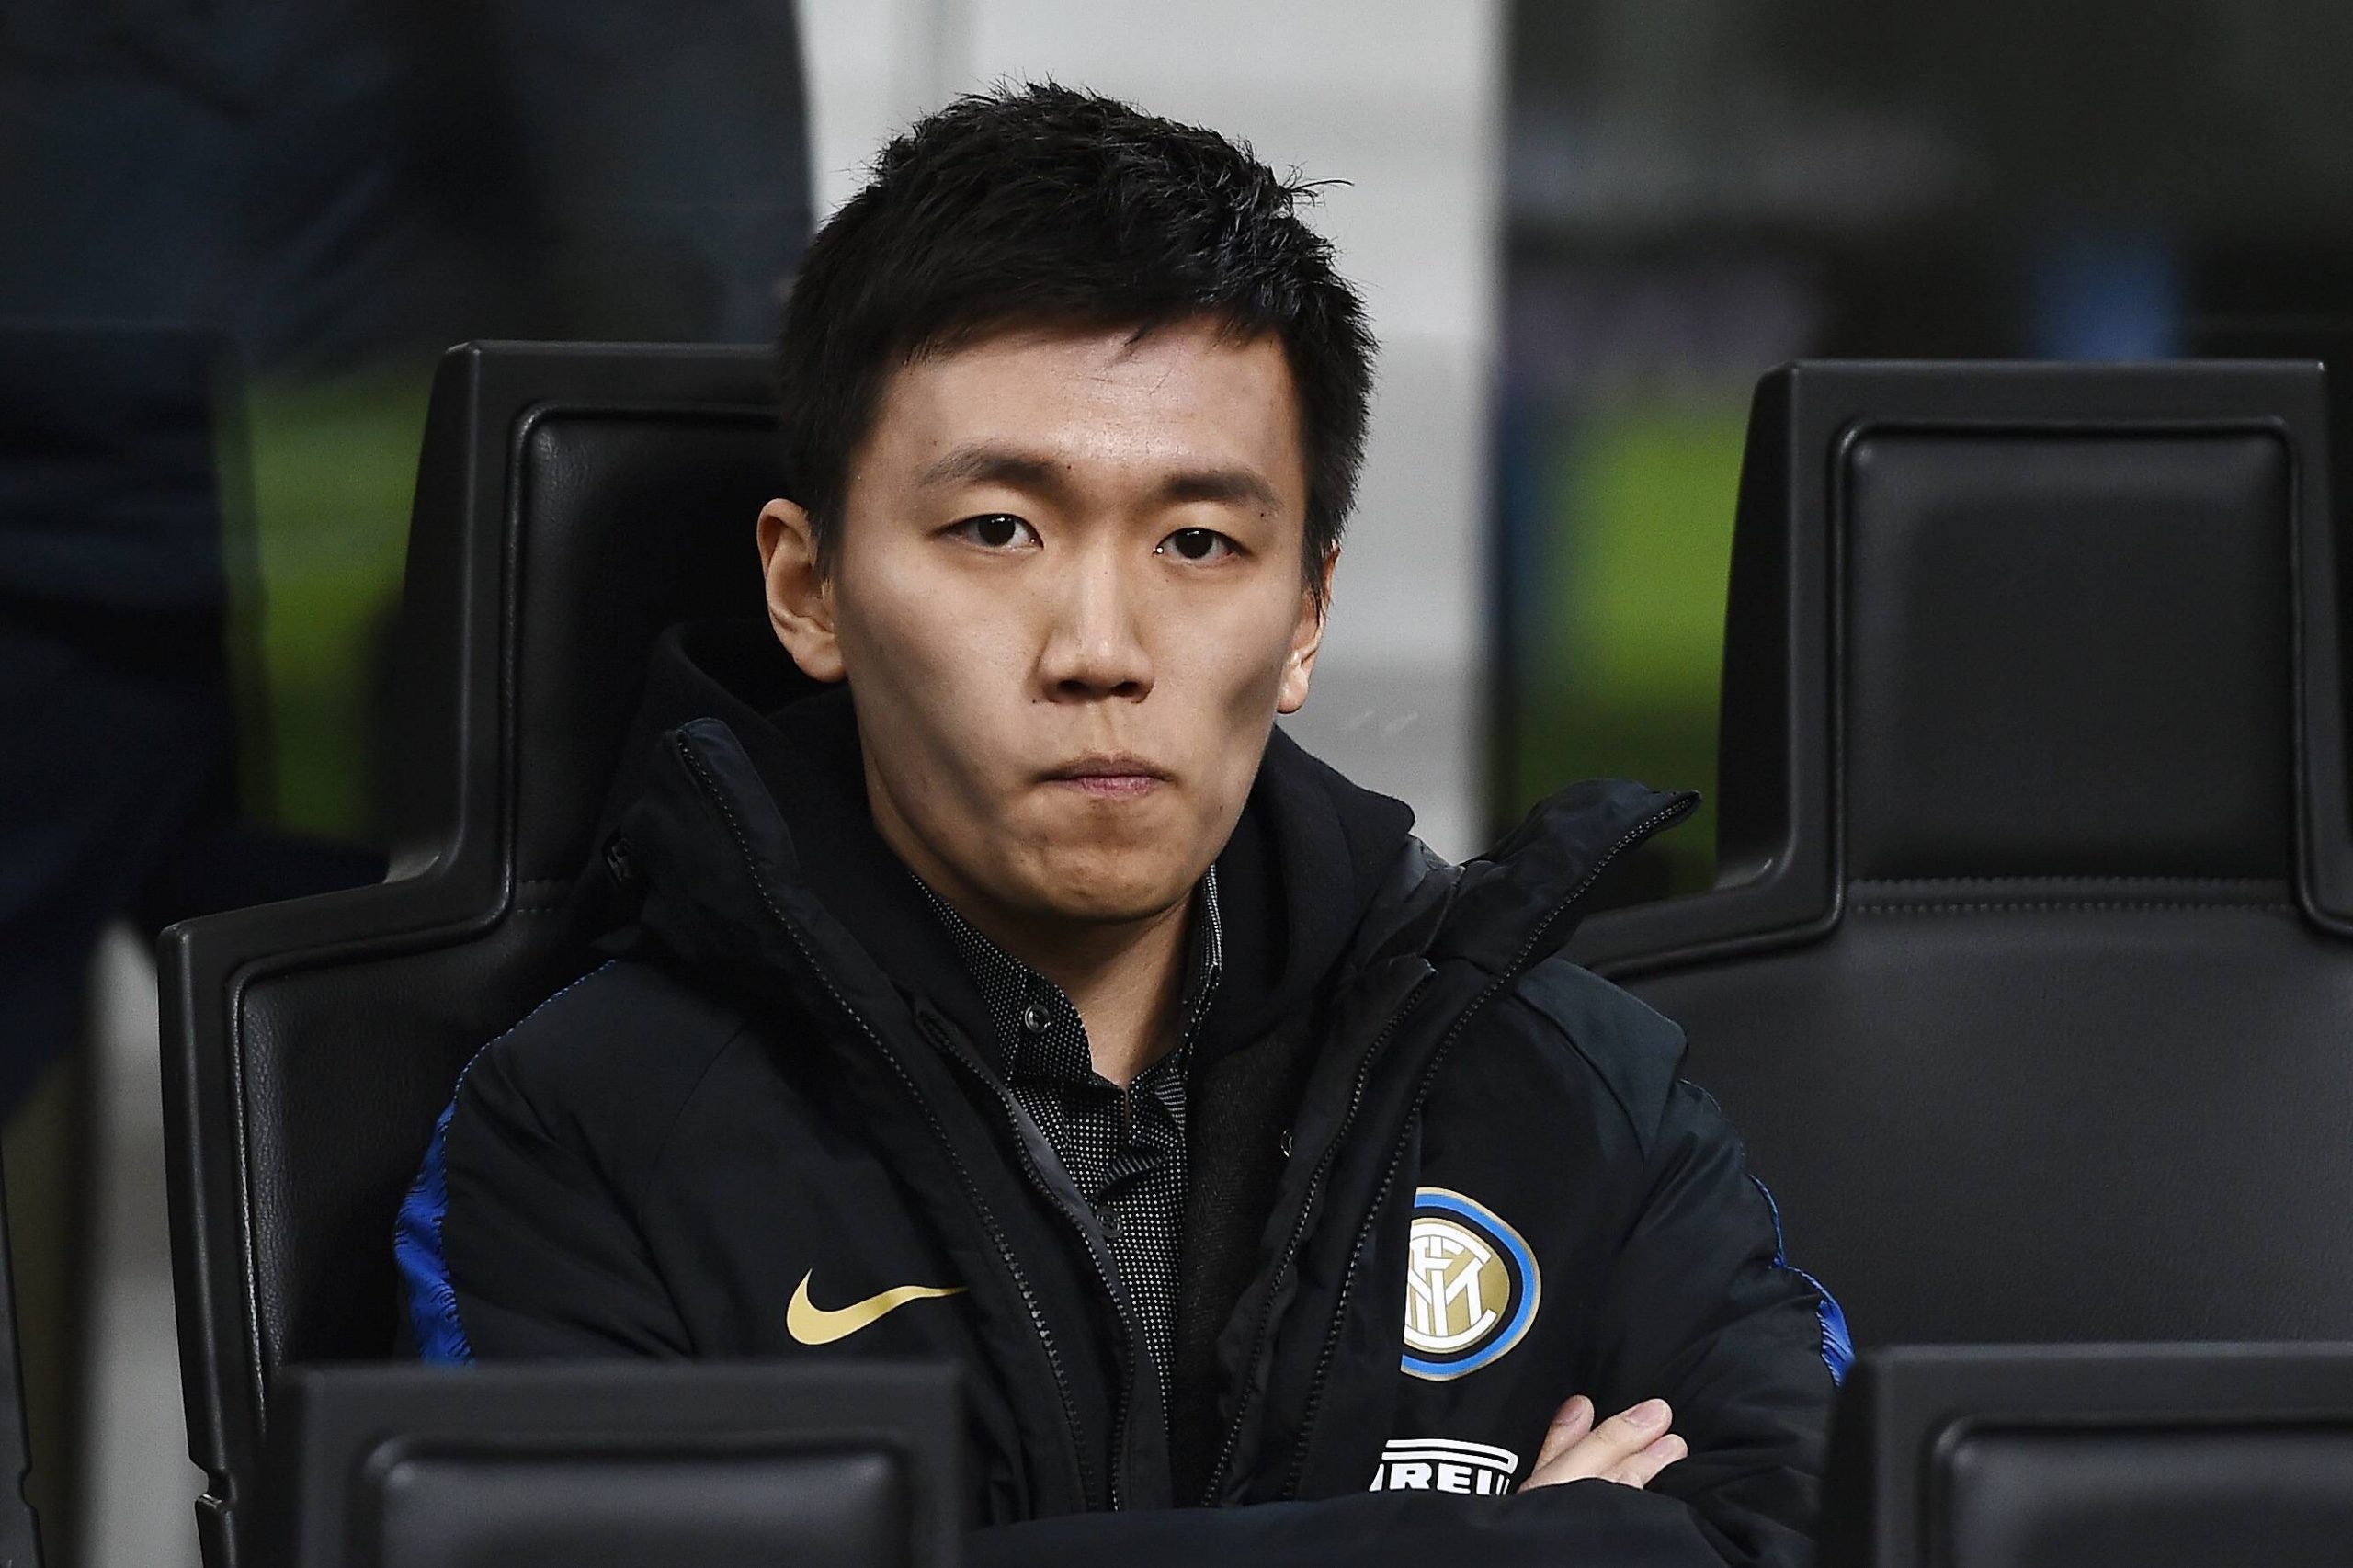 Inter President Steven Zhang Gave 10 Min Motivational Speech To Squad Yesterday, Italian Media Report